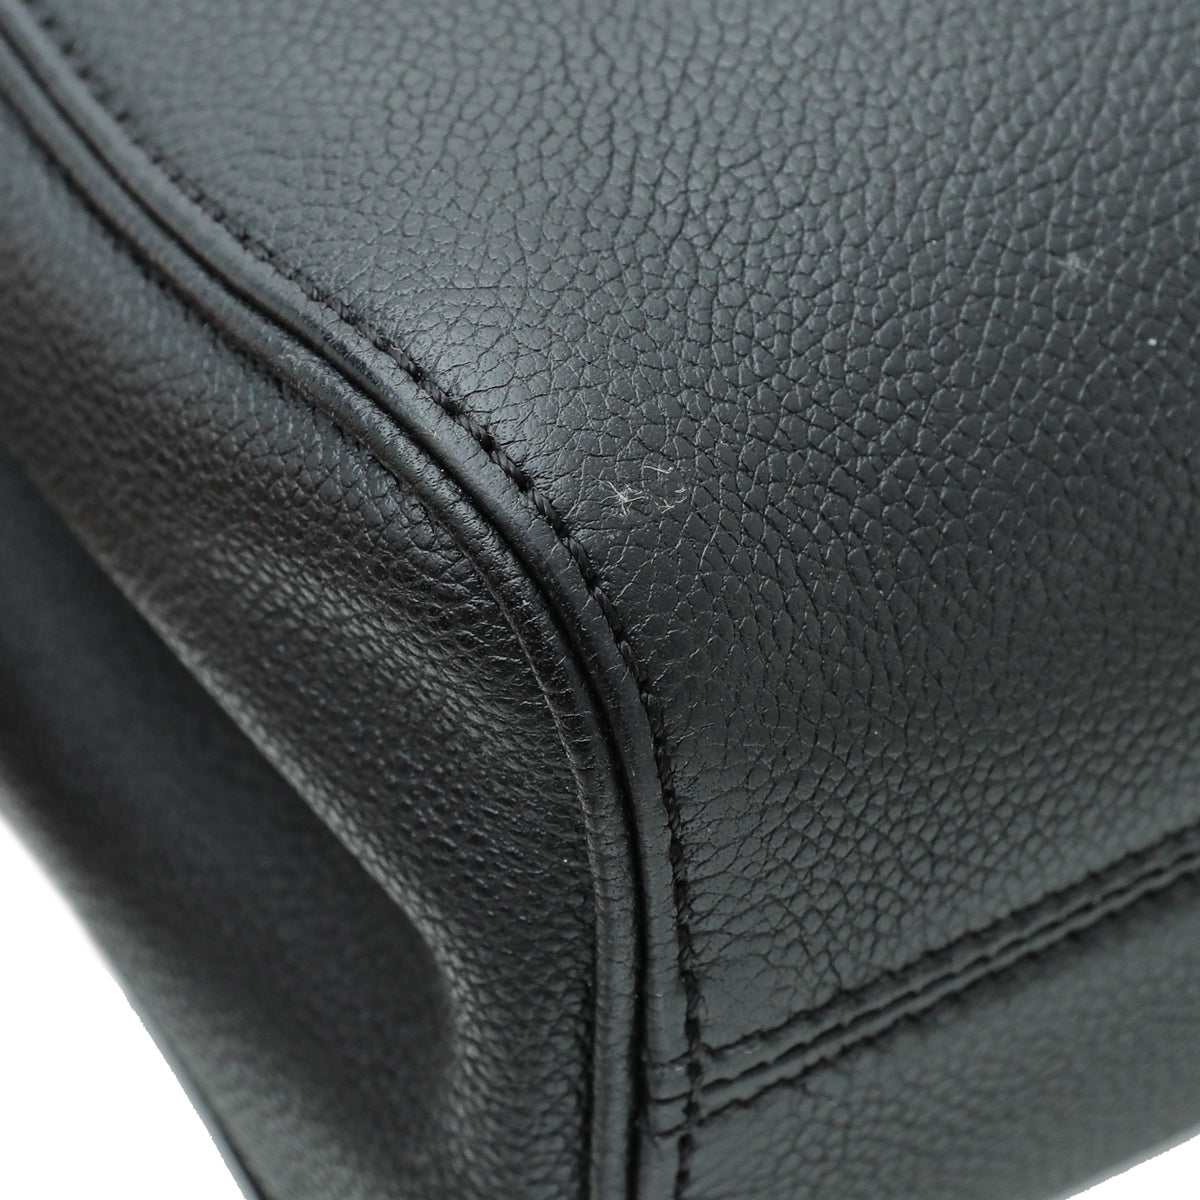 Louis Vuitton Black Monogram Empreinte Leather Marignan, myGemma, NL